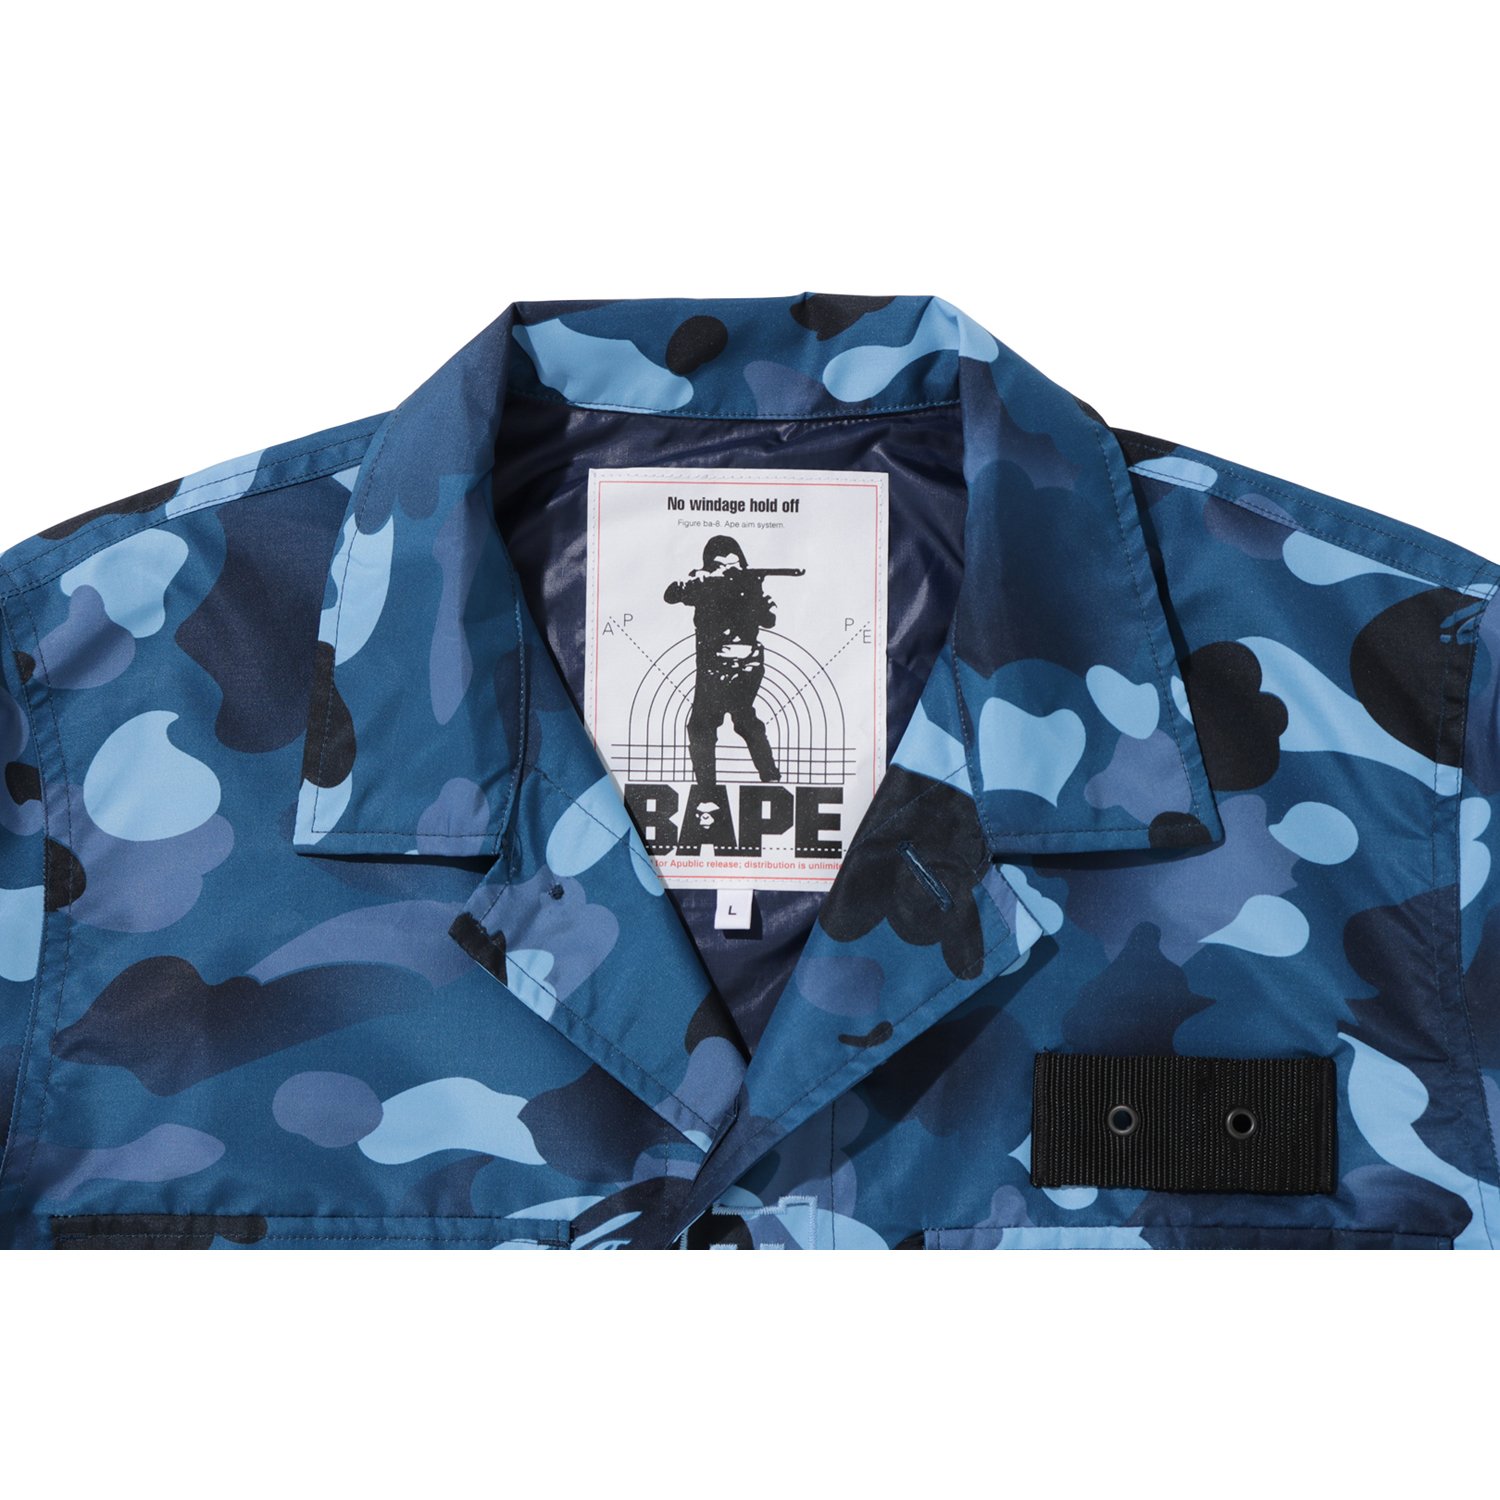 BAPE Gradation Camo Military Shirt Jacket Blue Men's - FW19 - US